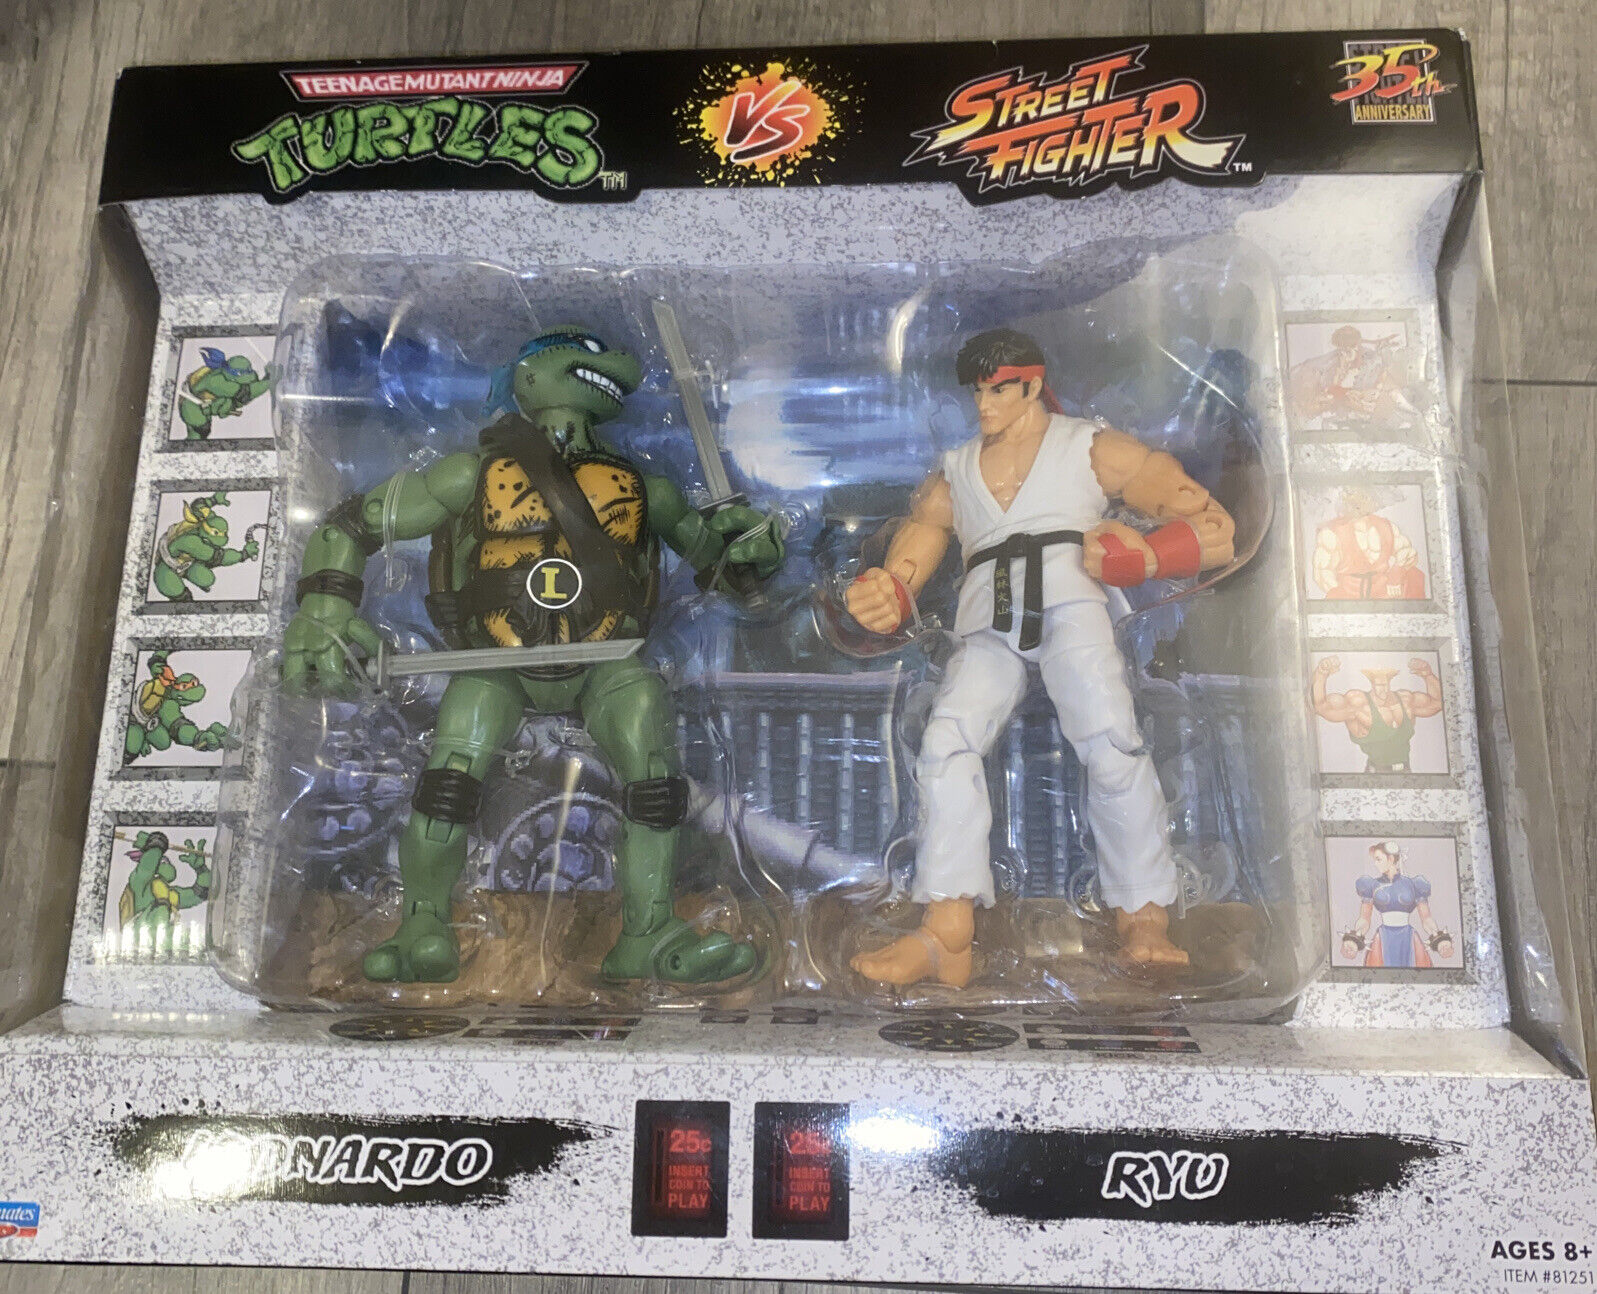 Teenage Mutant Ninja Turtles Vs. Street Fighter Figure 2-Pack - Leonardo vs Ryu